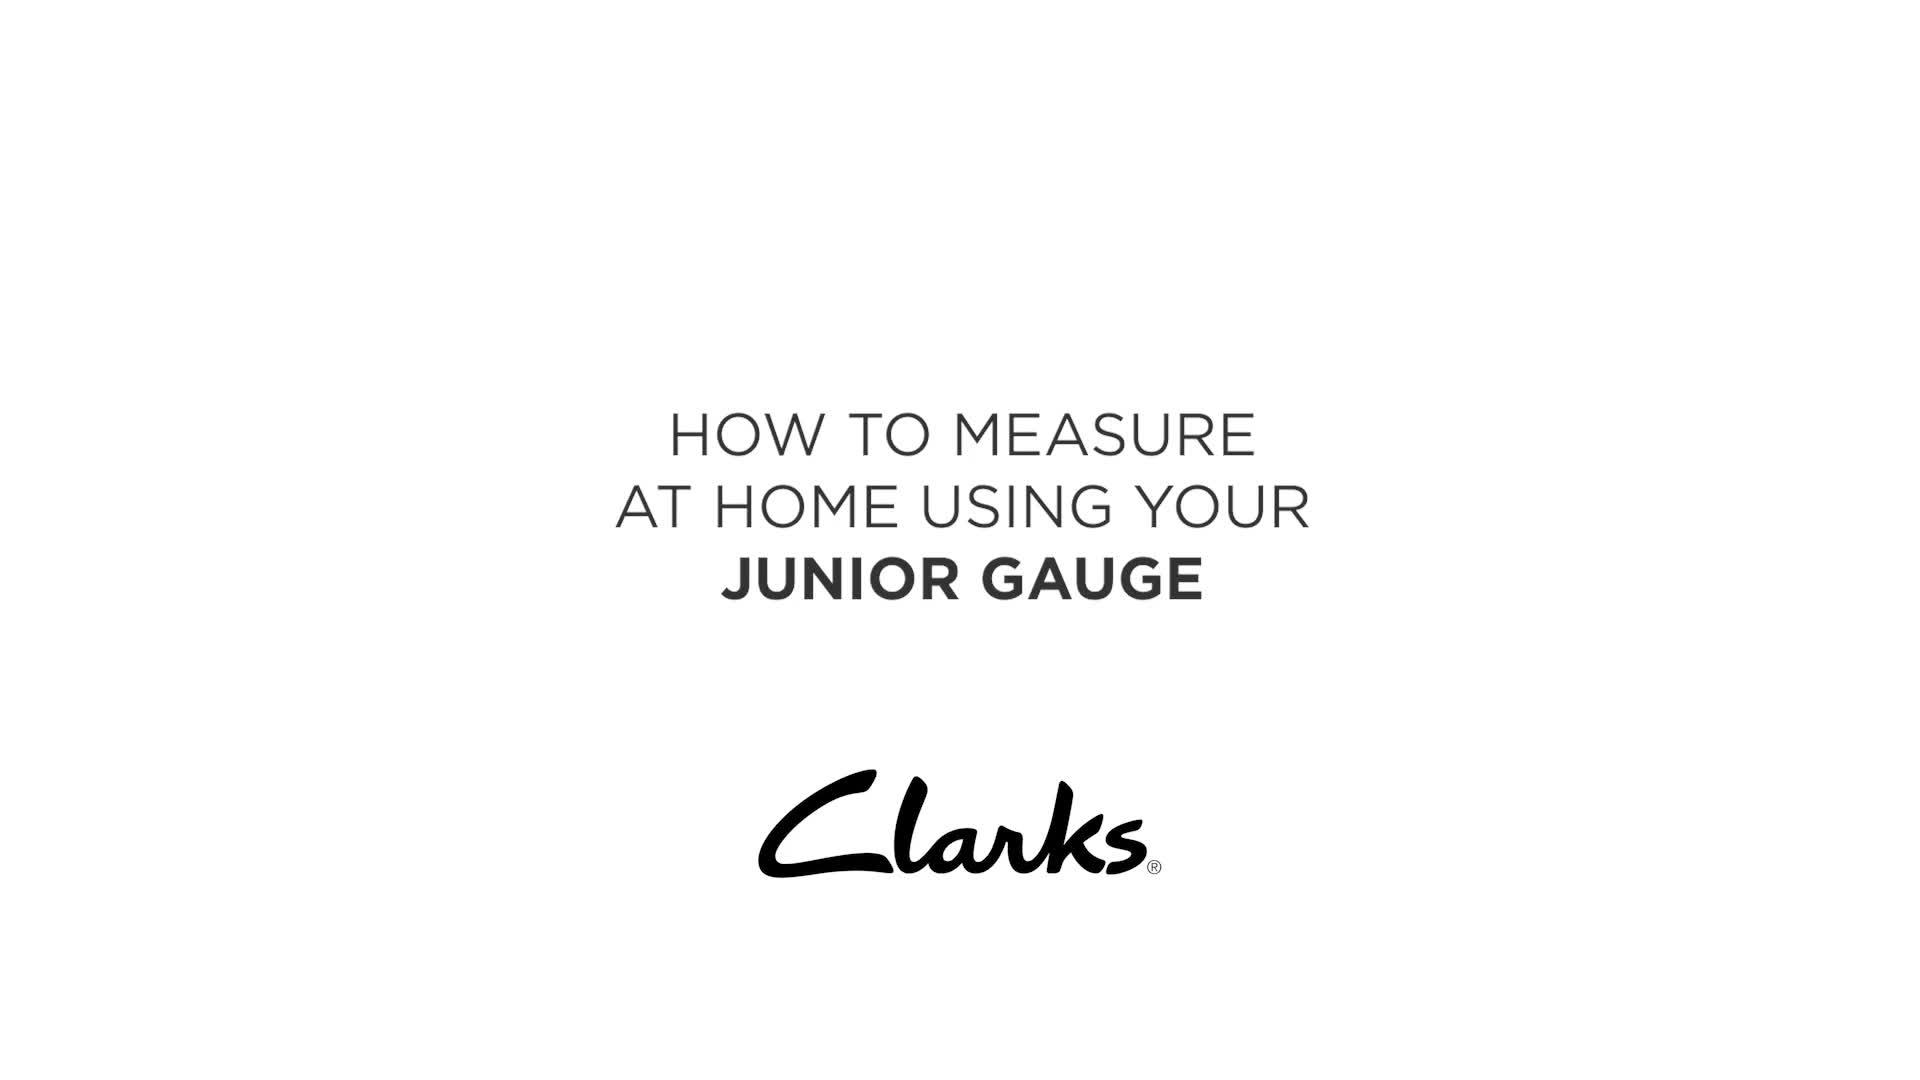 clarks junior gauge